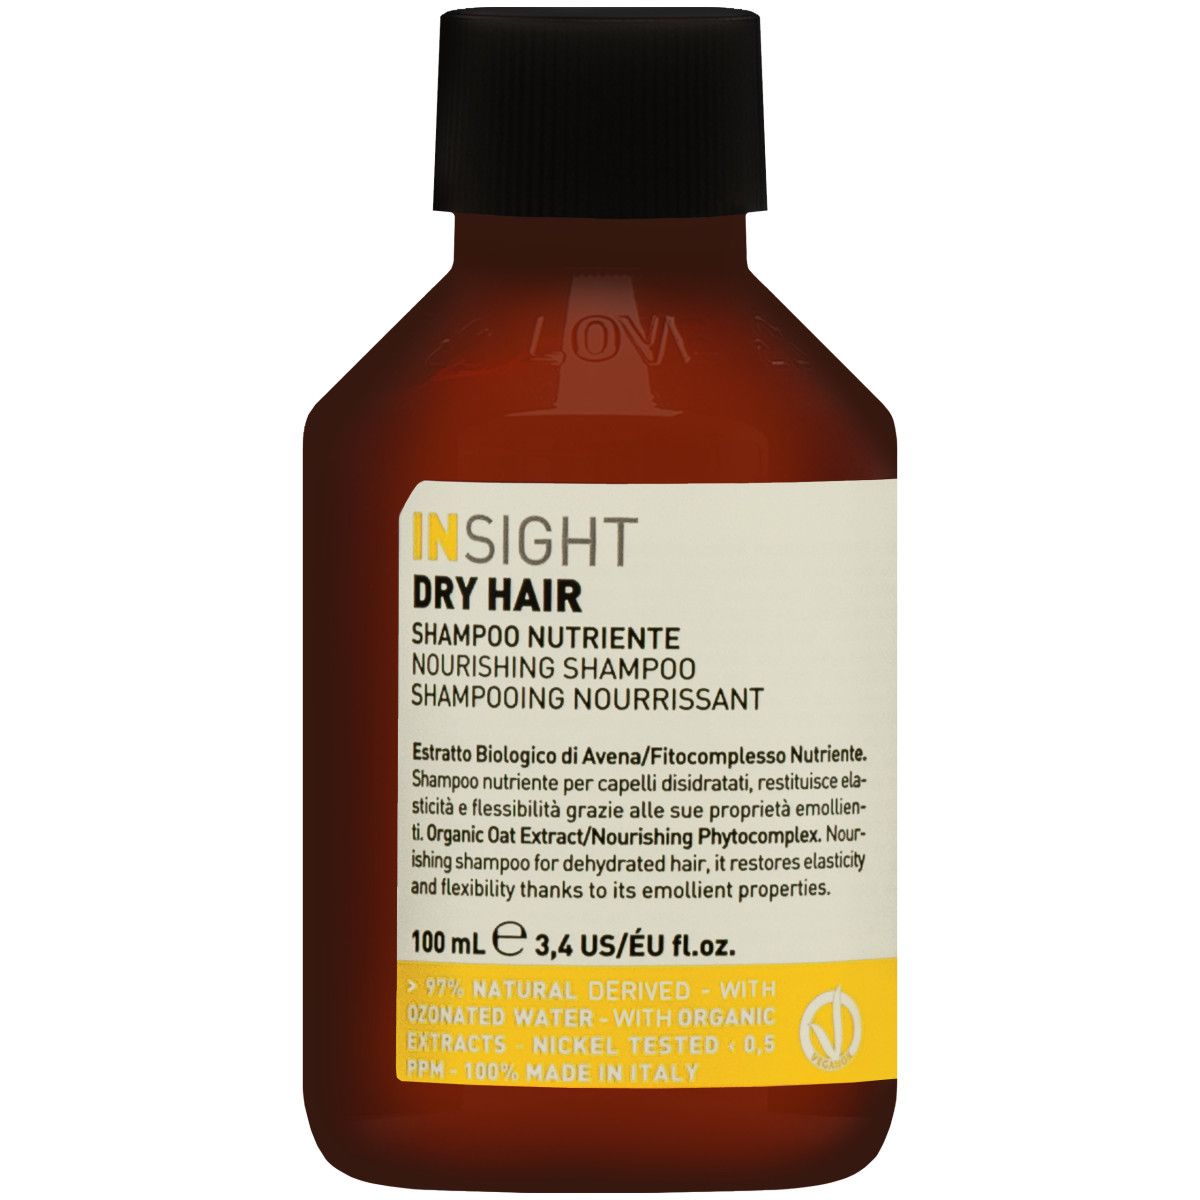 Insight Dry Hair Shampoo - szampon do włosów suchych i zniszczonych, 100ml